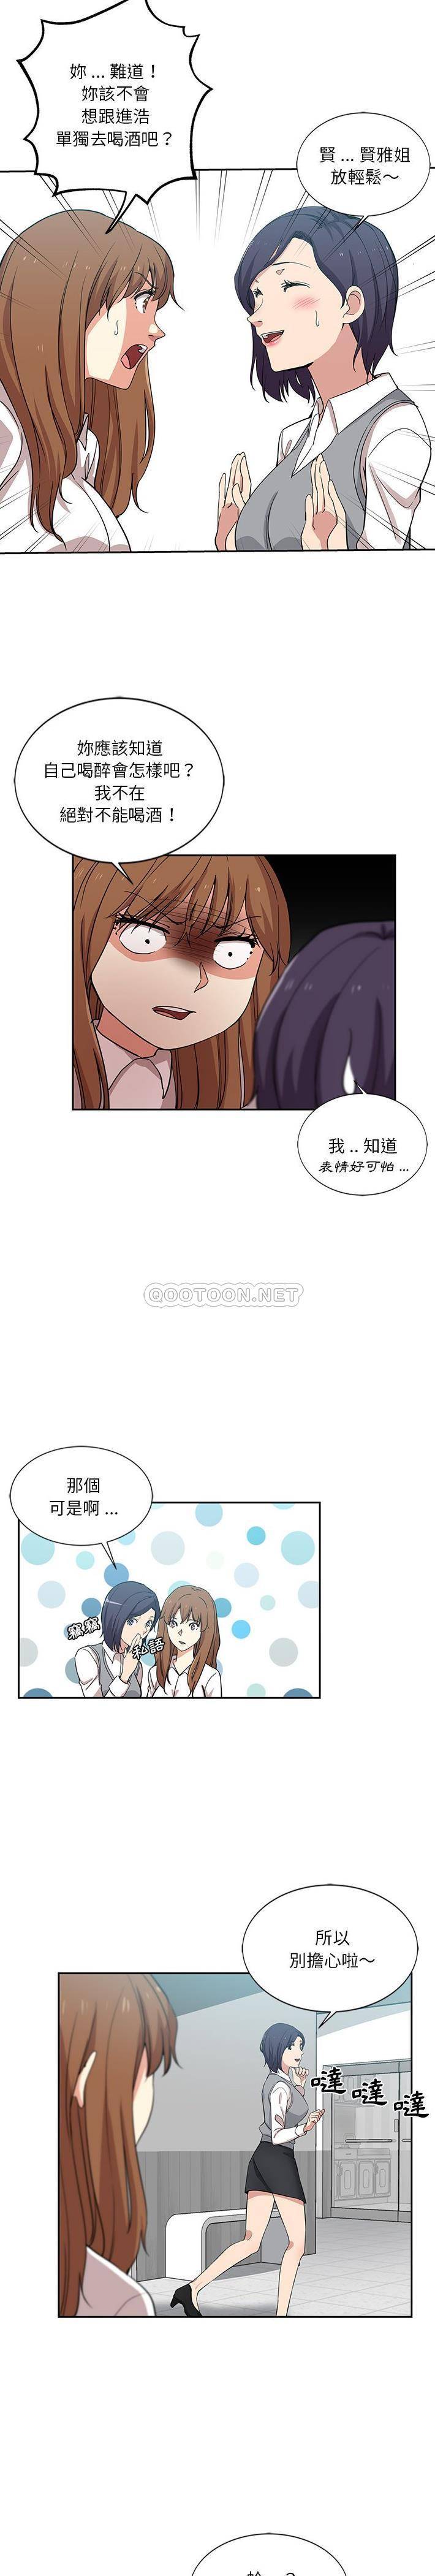 韩国污漫画 危險純友誼 第7话 5